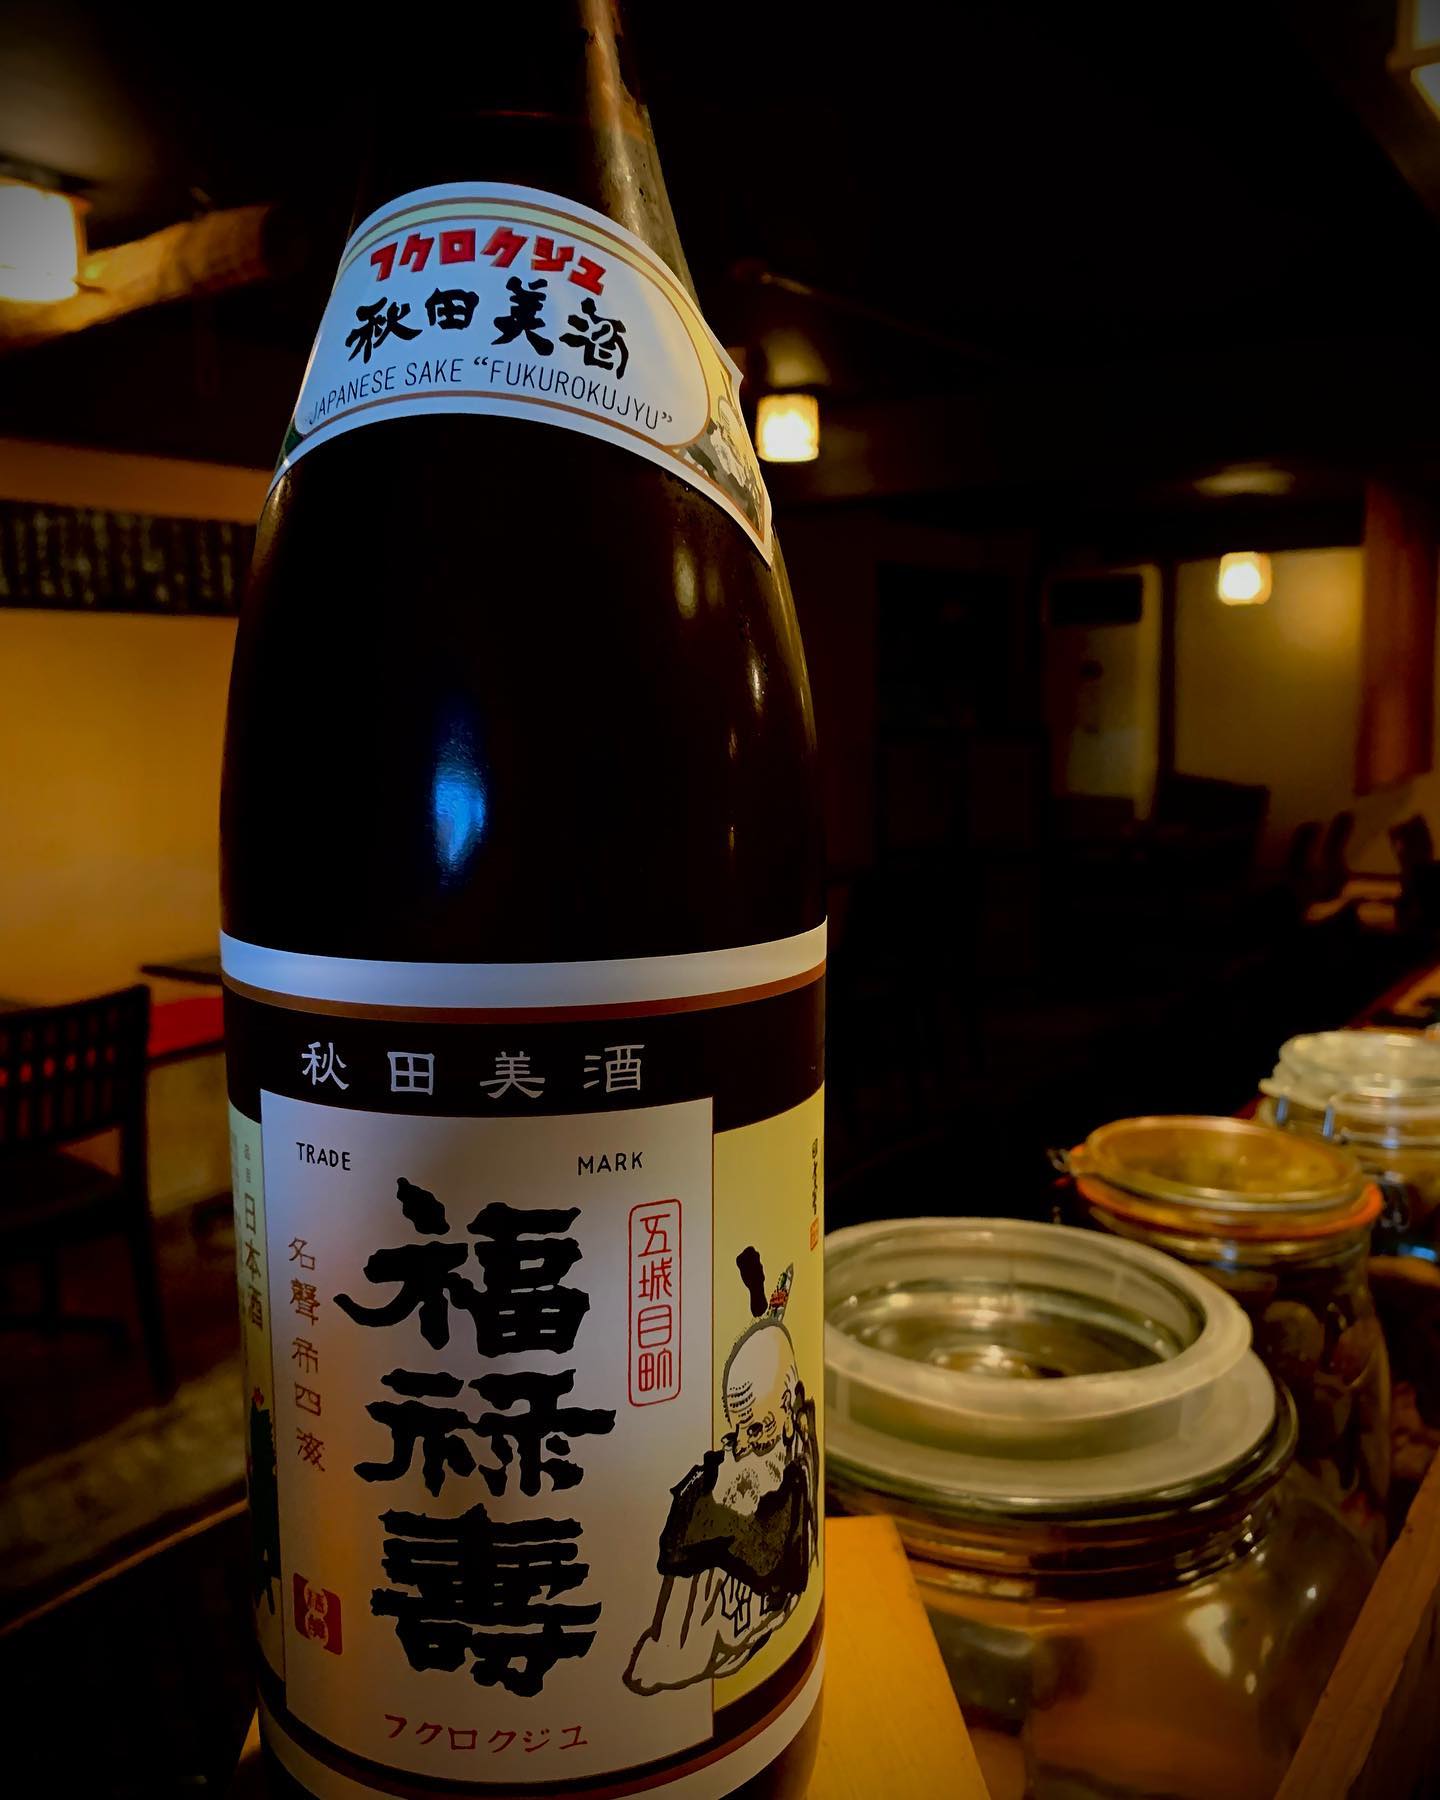 本日の日本酒紹介
「福禄寿」
きめ細かな口当たりでスッキリと冴えのある味
飲めば飲むほど味わい深い日本酒です。
 #